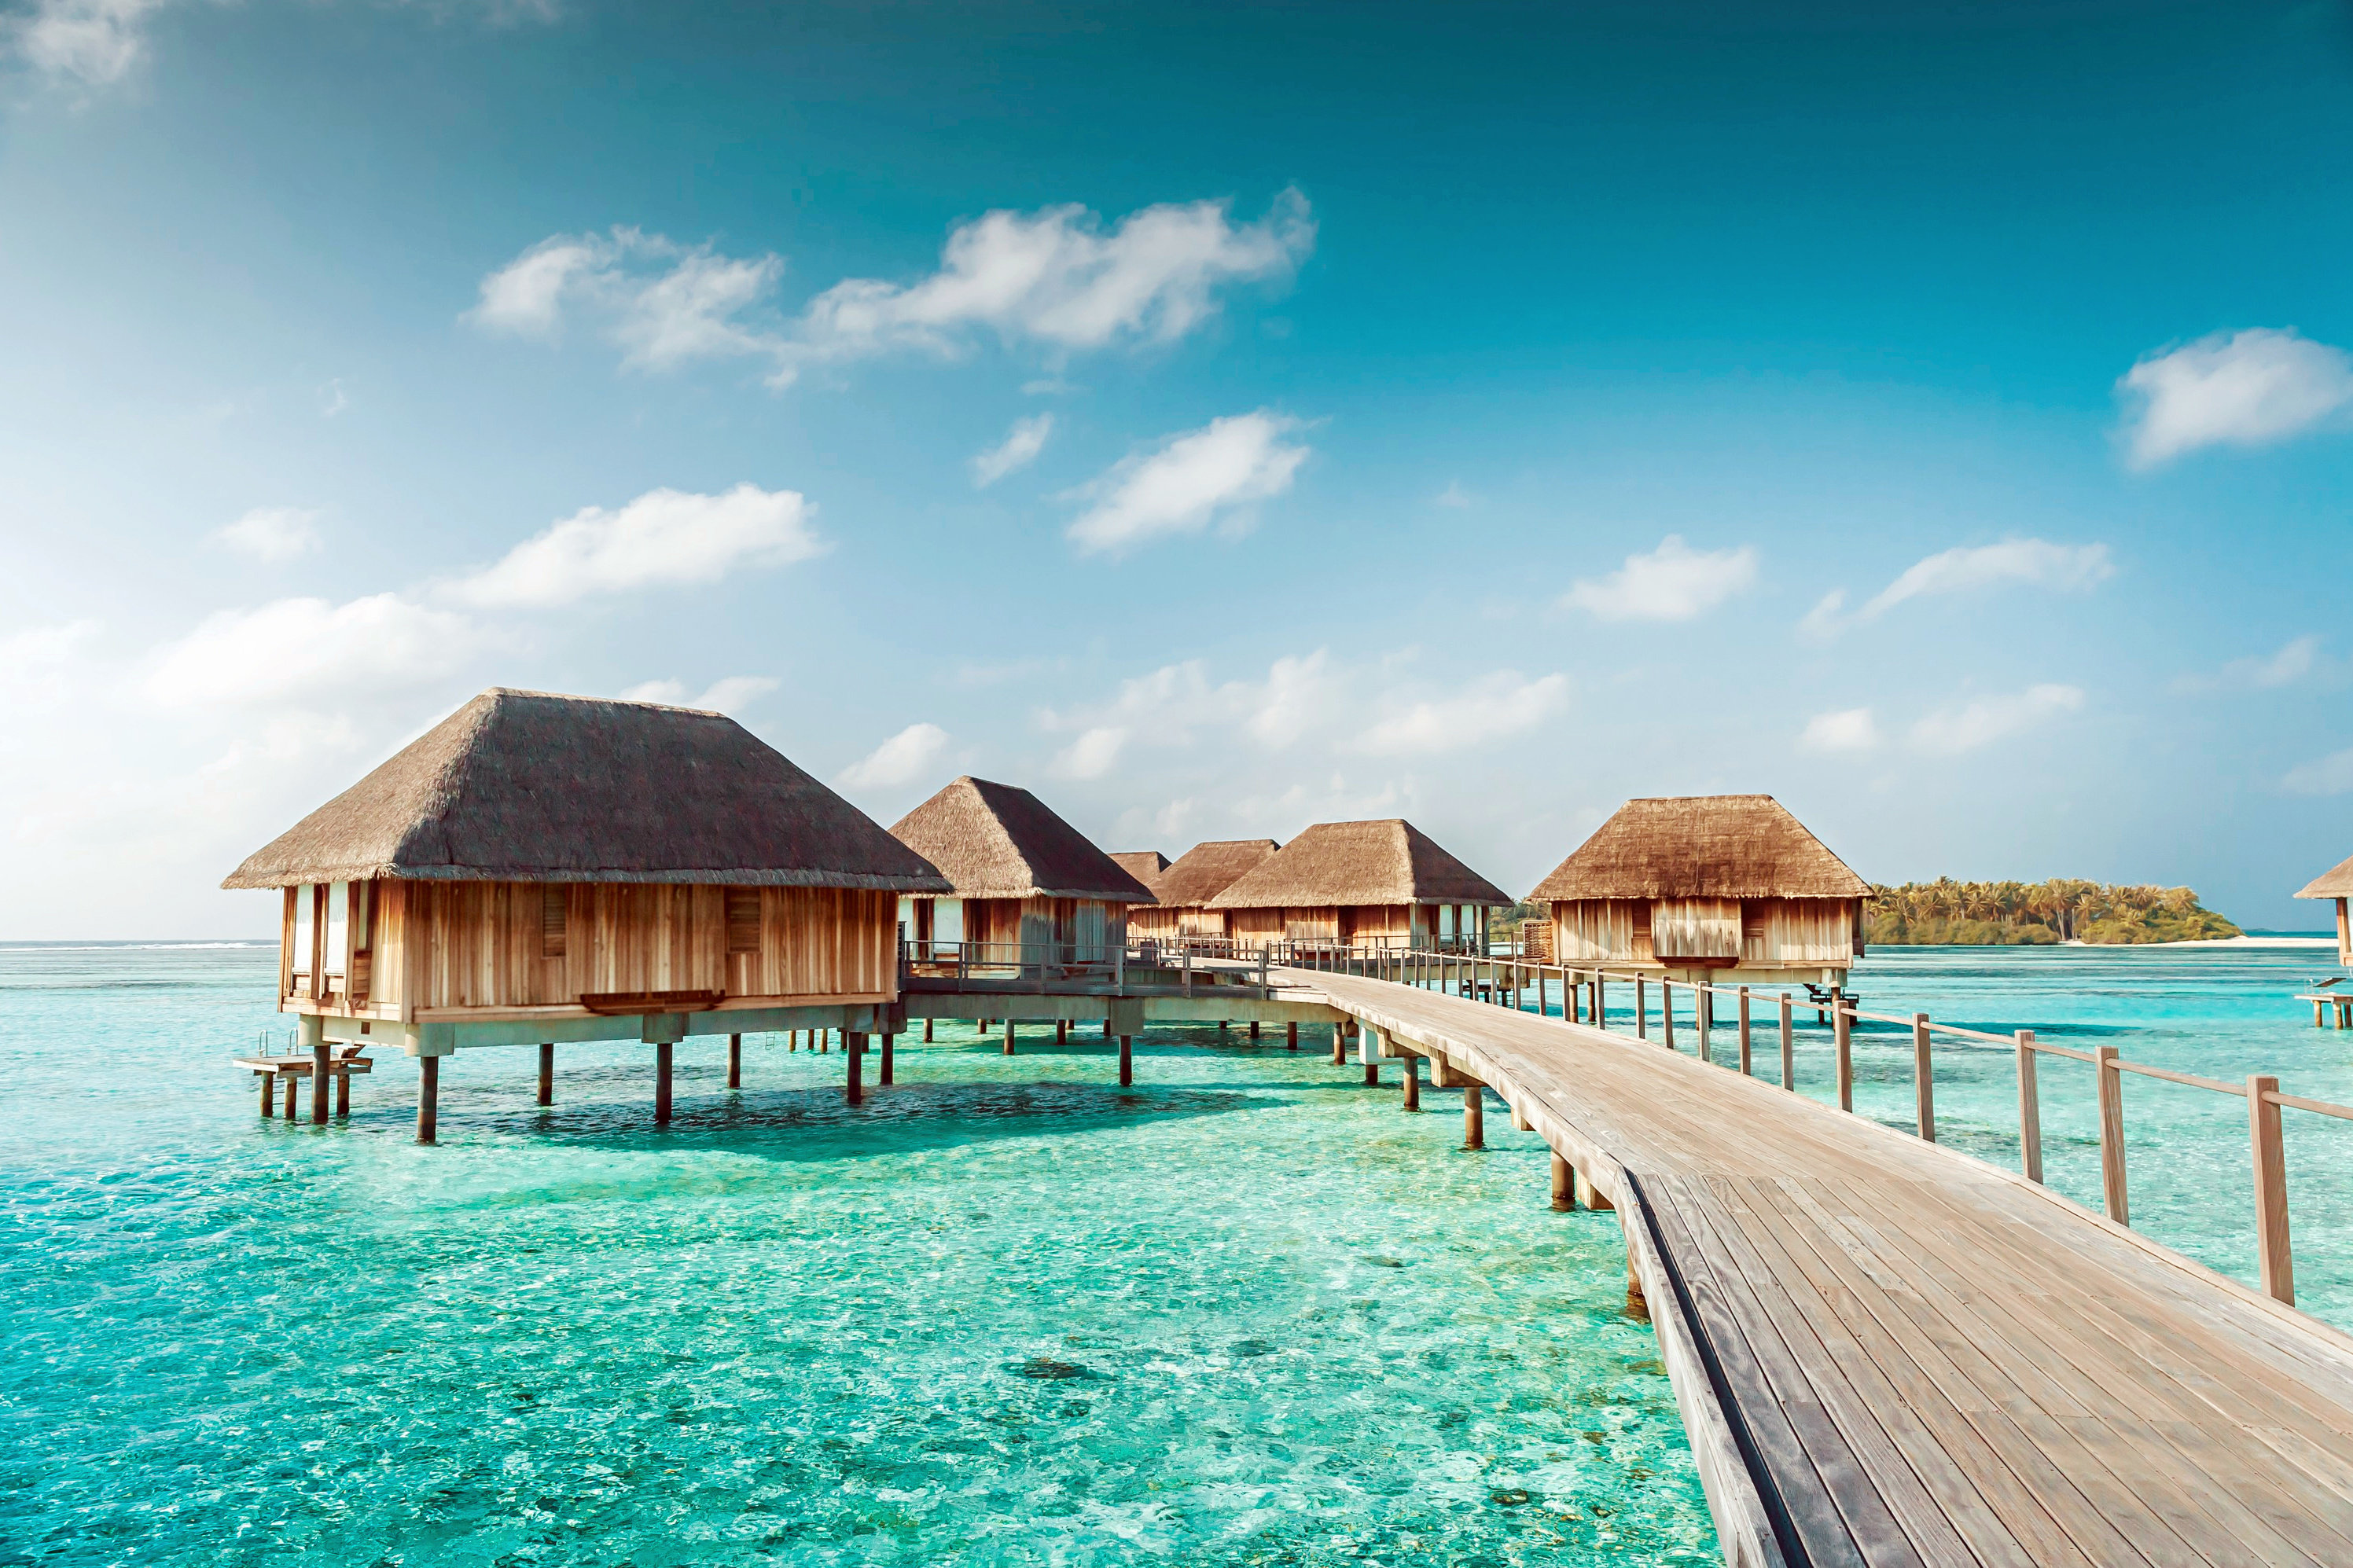  Malediven  Urlaub g nstig buchen mit urlaub de